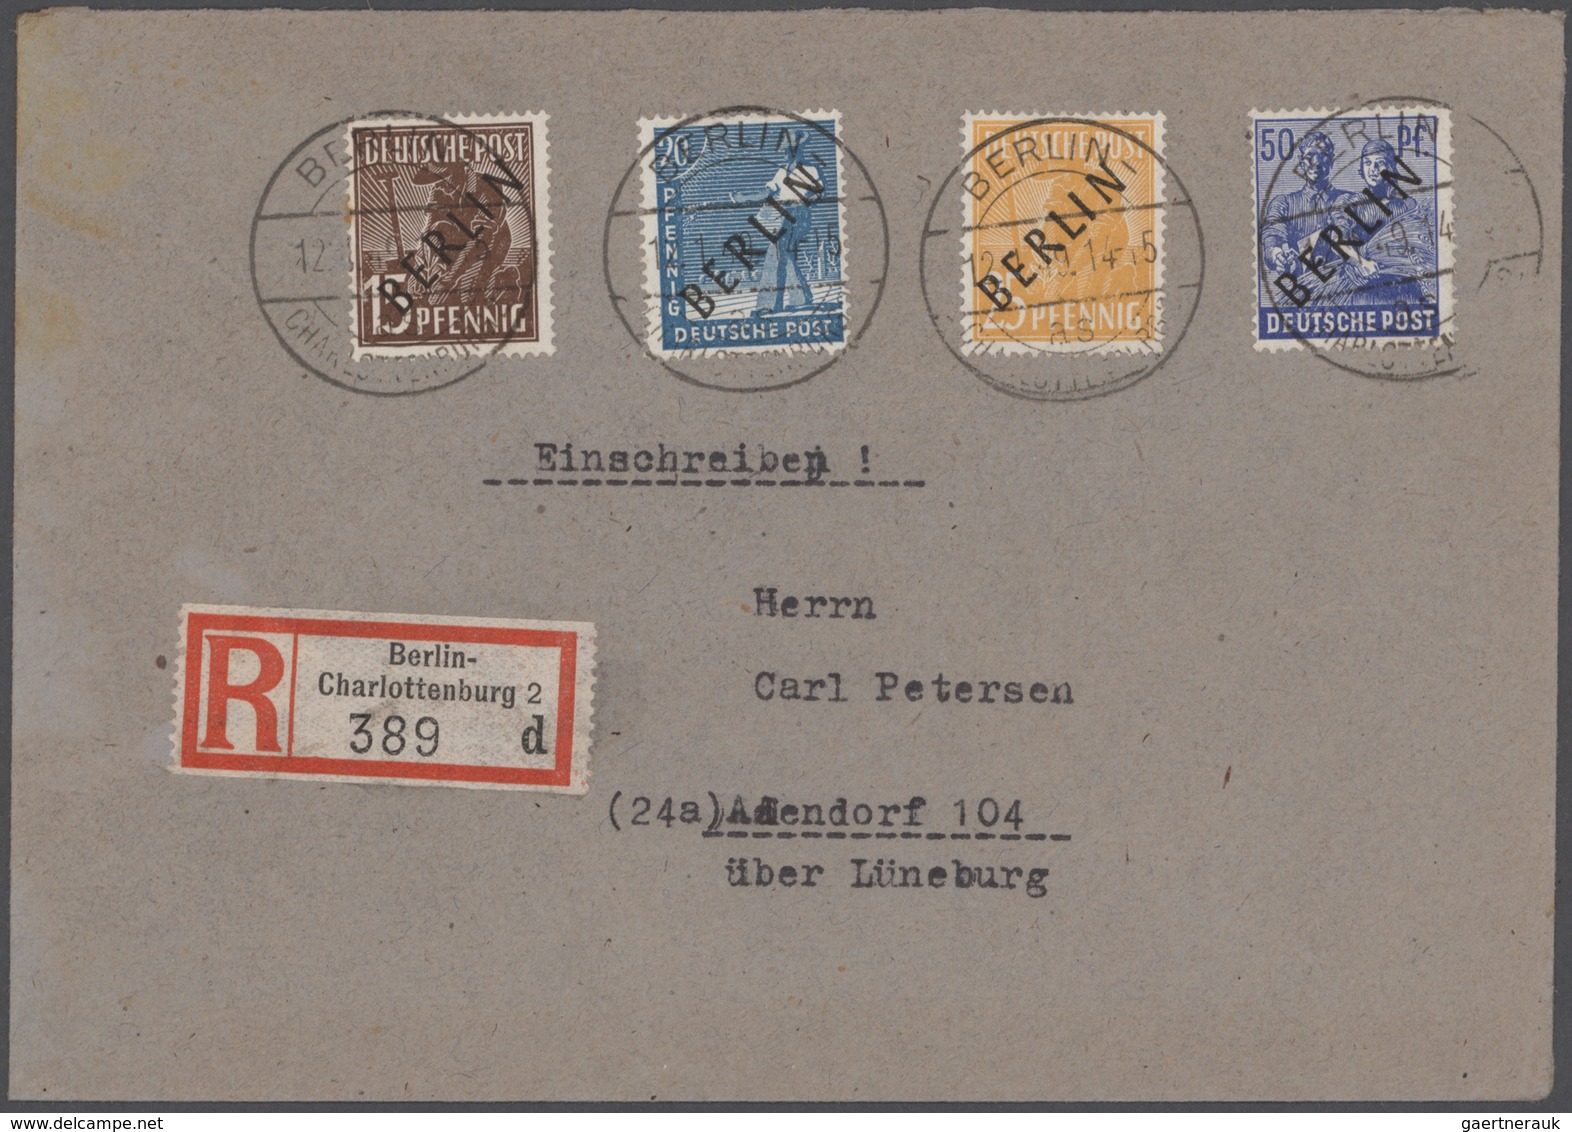 Berlin: 1948/1966, schöner Posten von 23 Einzel-, Mehrfach- und Mischfrankaturen, beginnend mit zwei